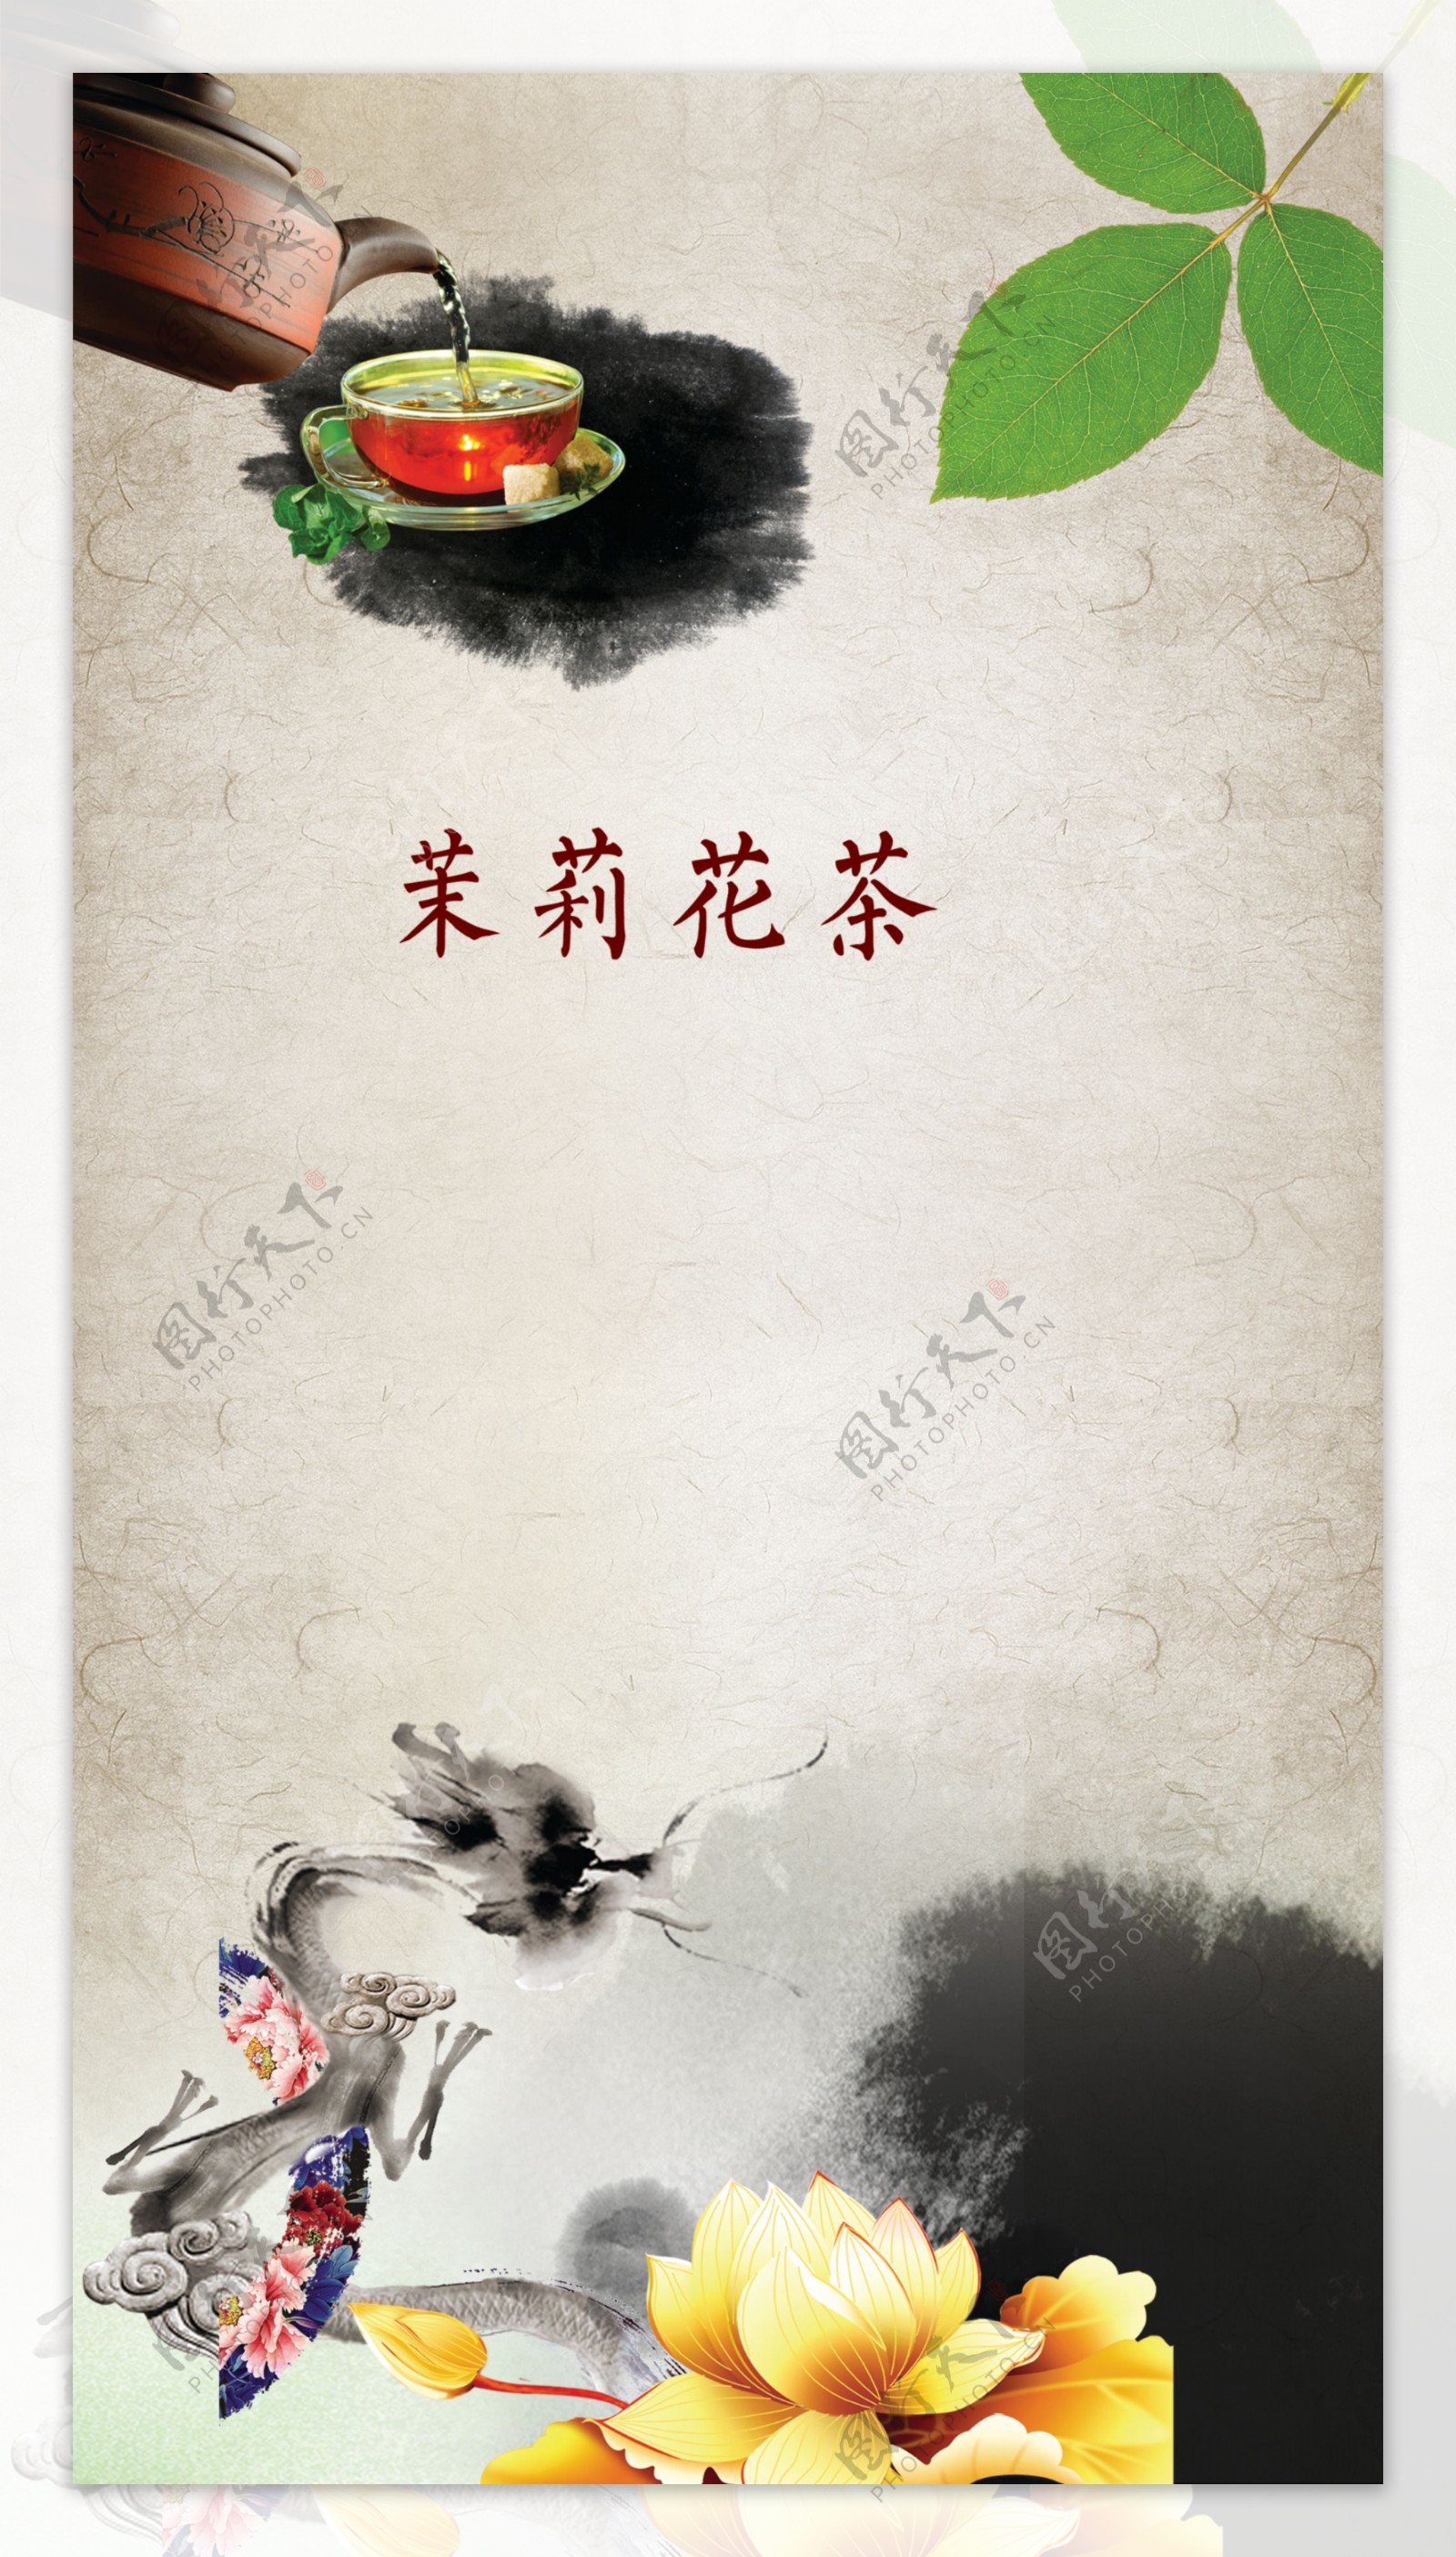 中国风古典茶叶文化背景设计